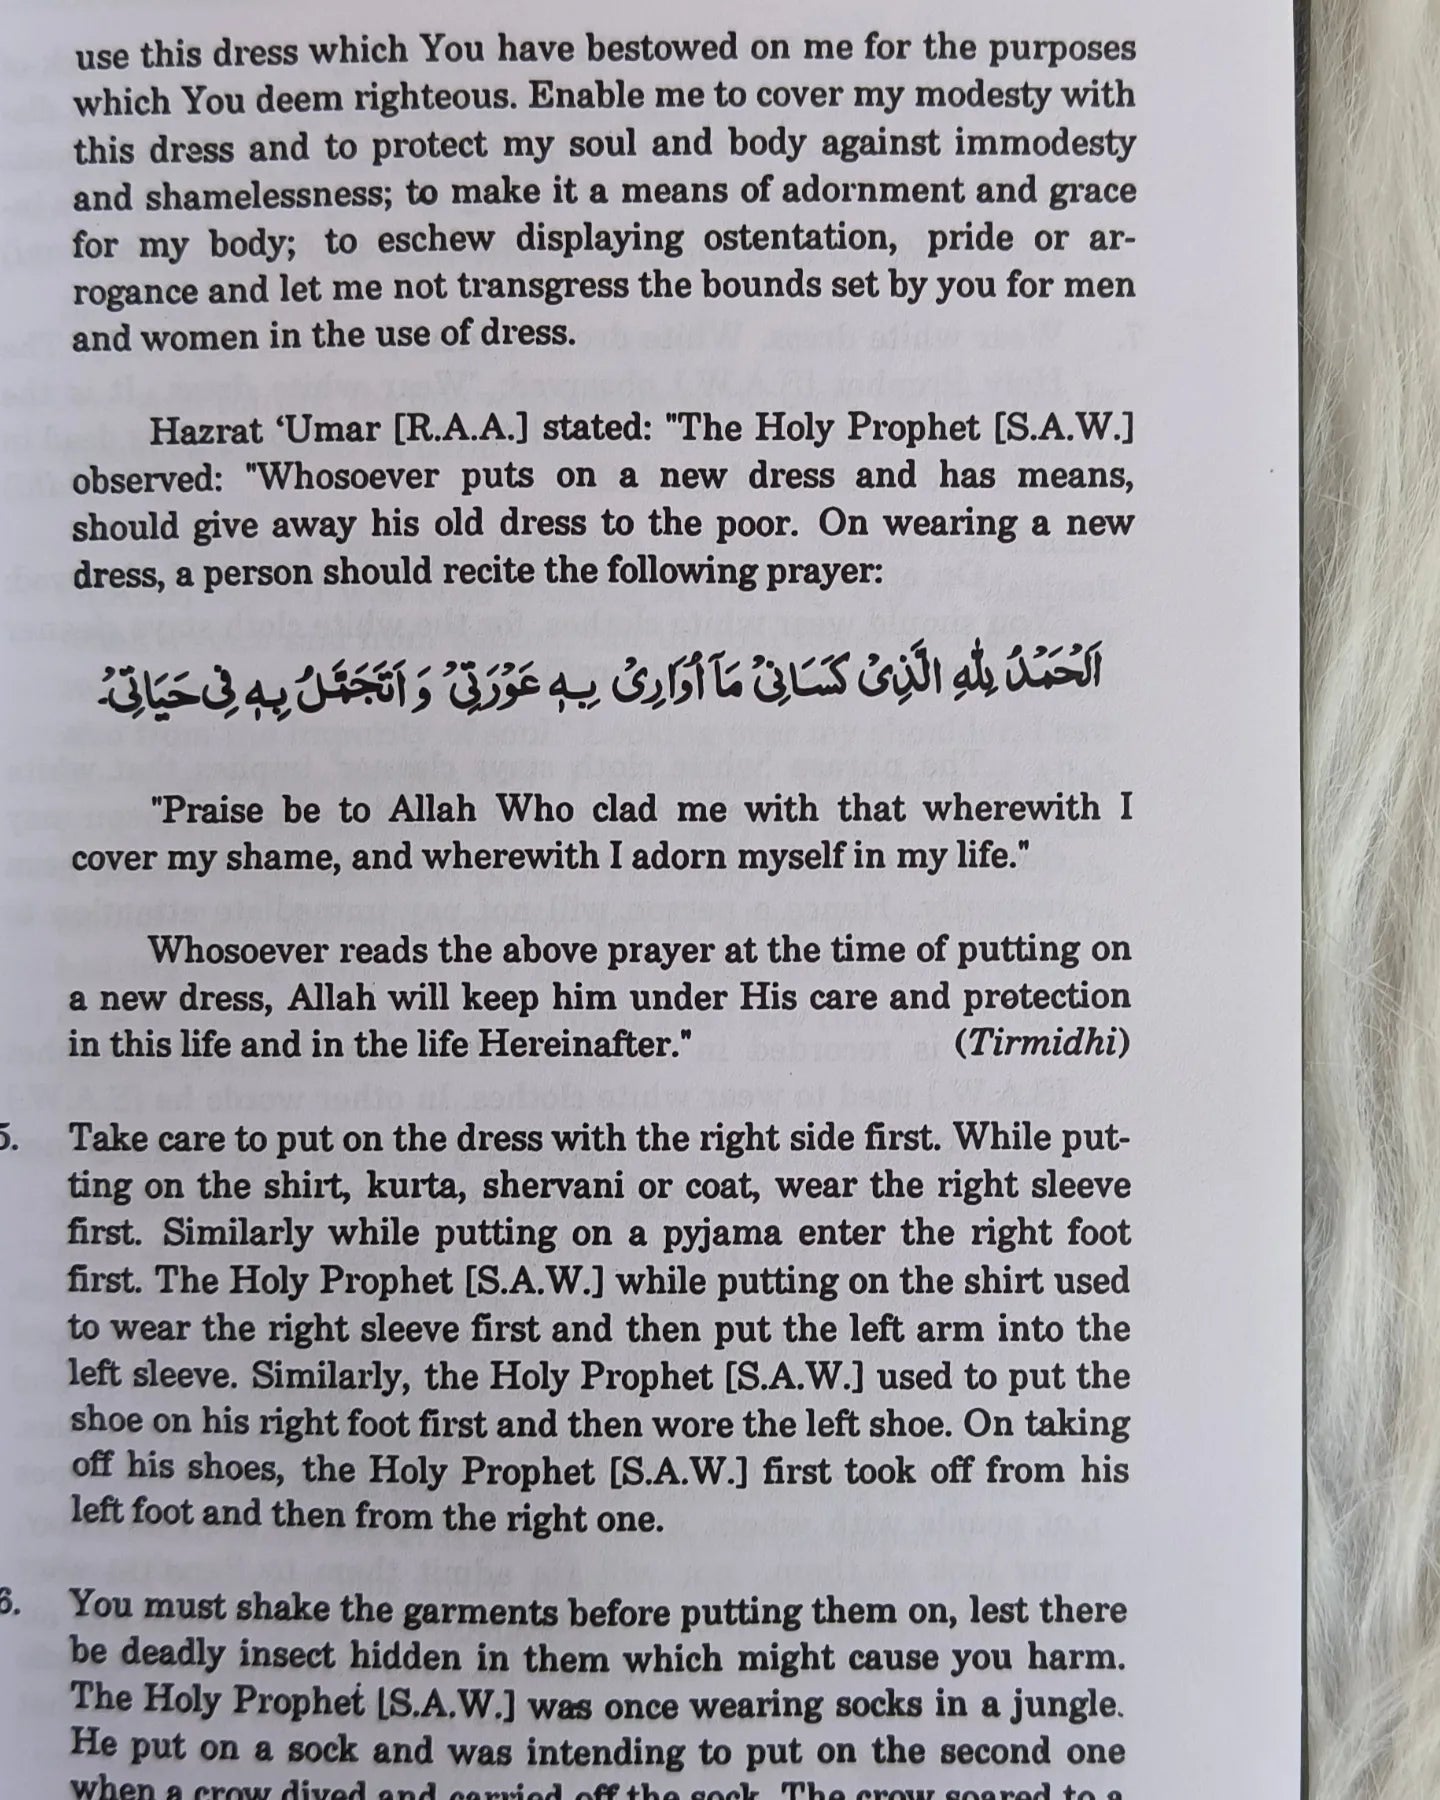 Etiquette of Life in Islam (Adab e Zindagi) by Maulana Muhammad Yusuf Islahi (Author) alifthebookstore